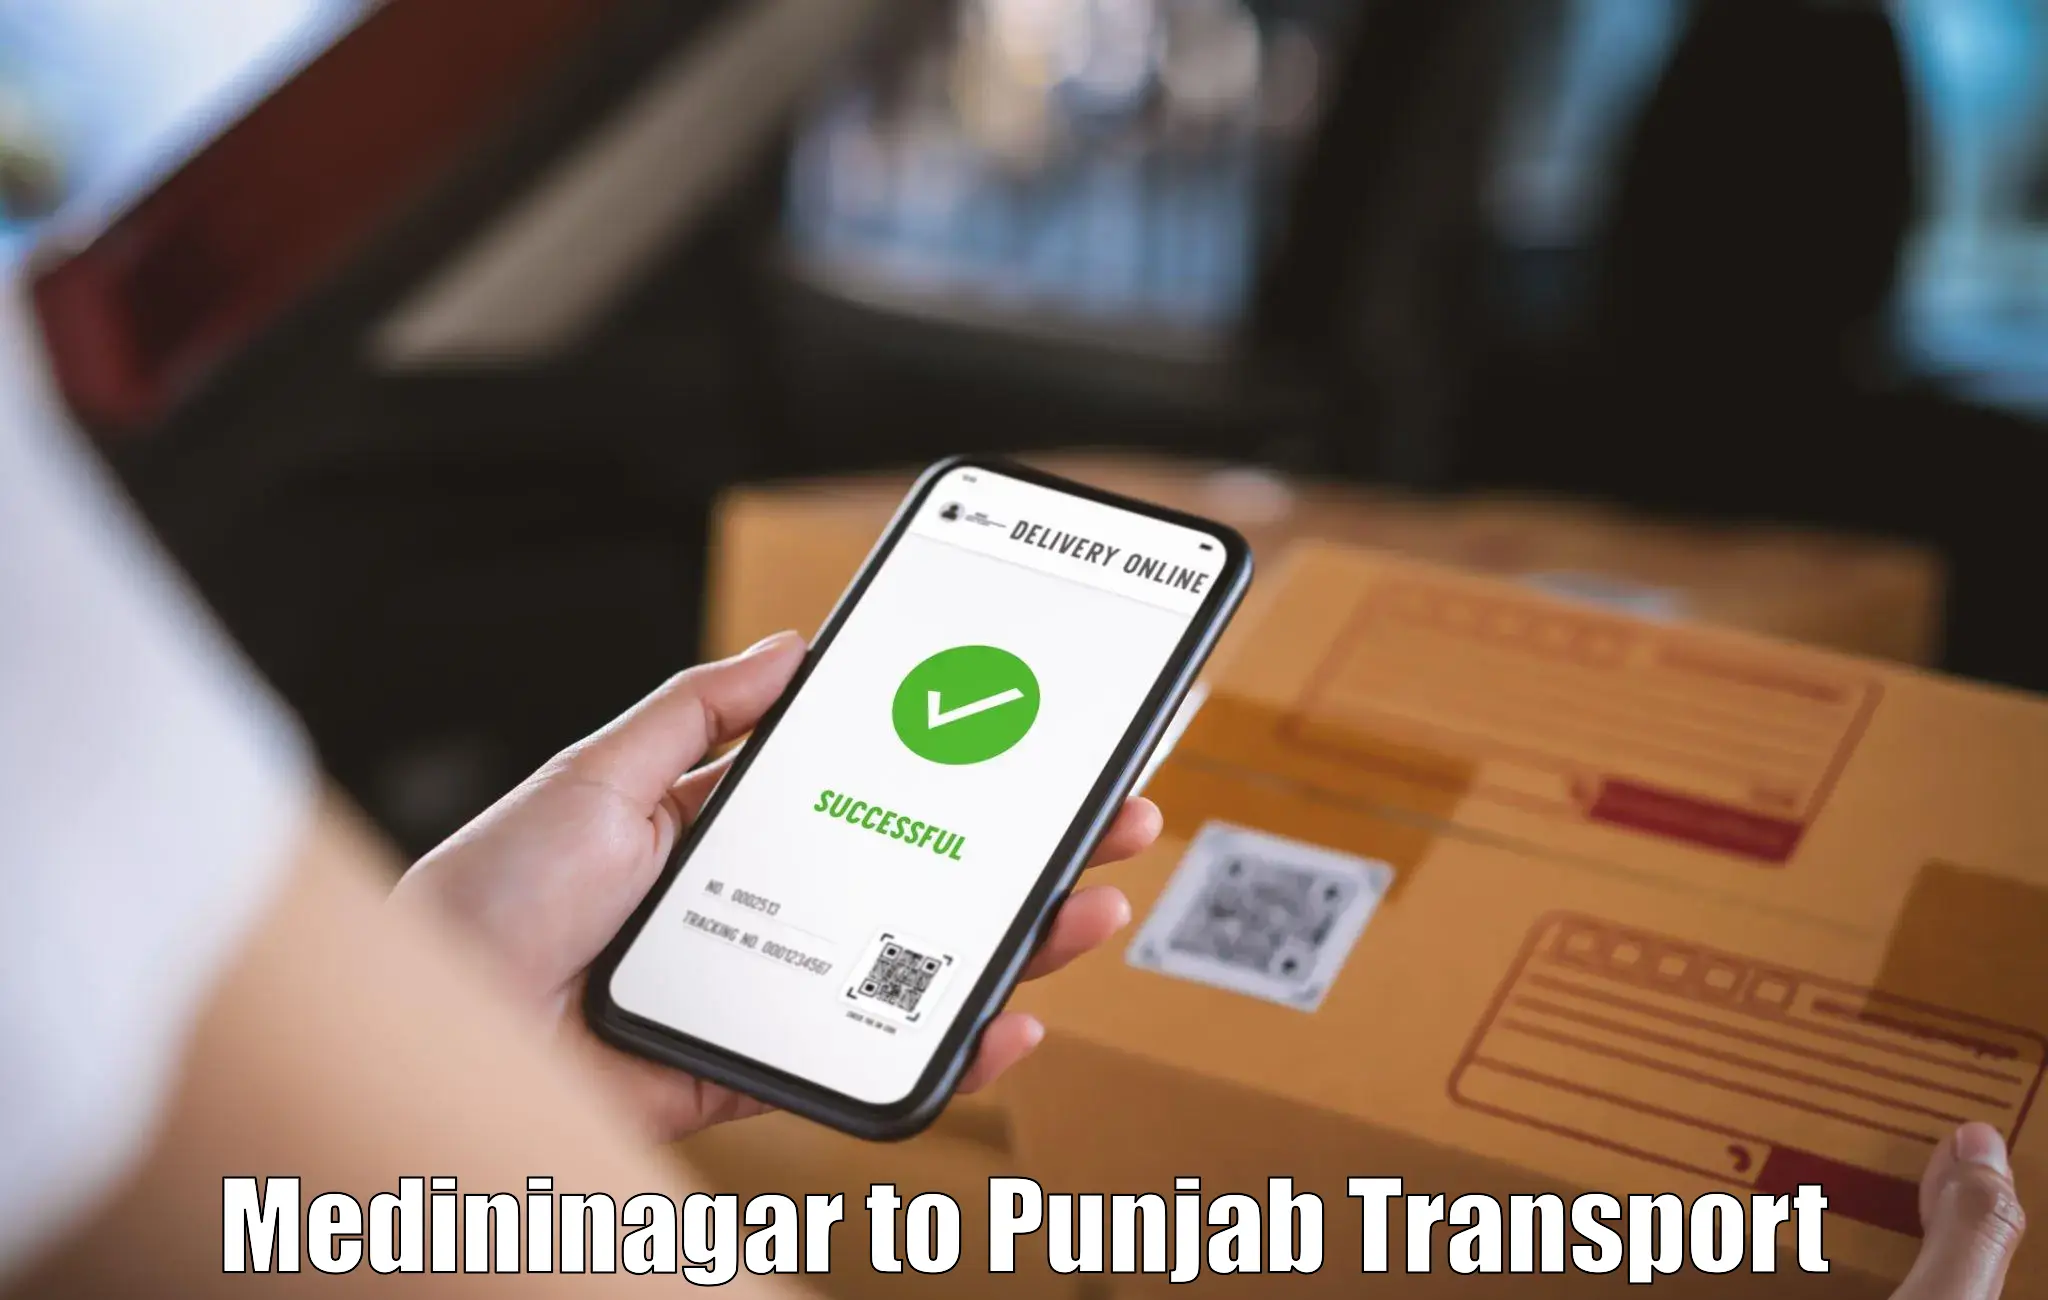 Online transport booking Medininagar to Malerkotla